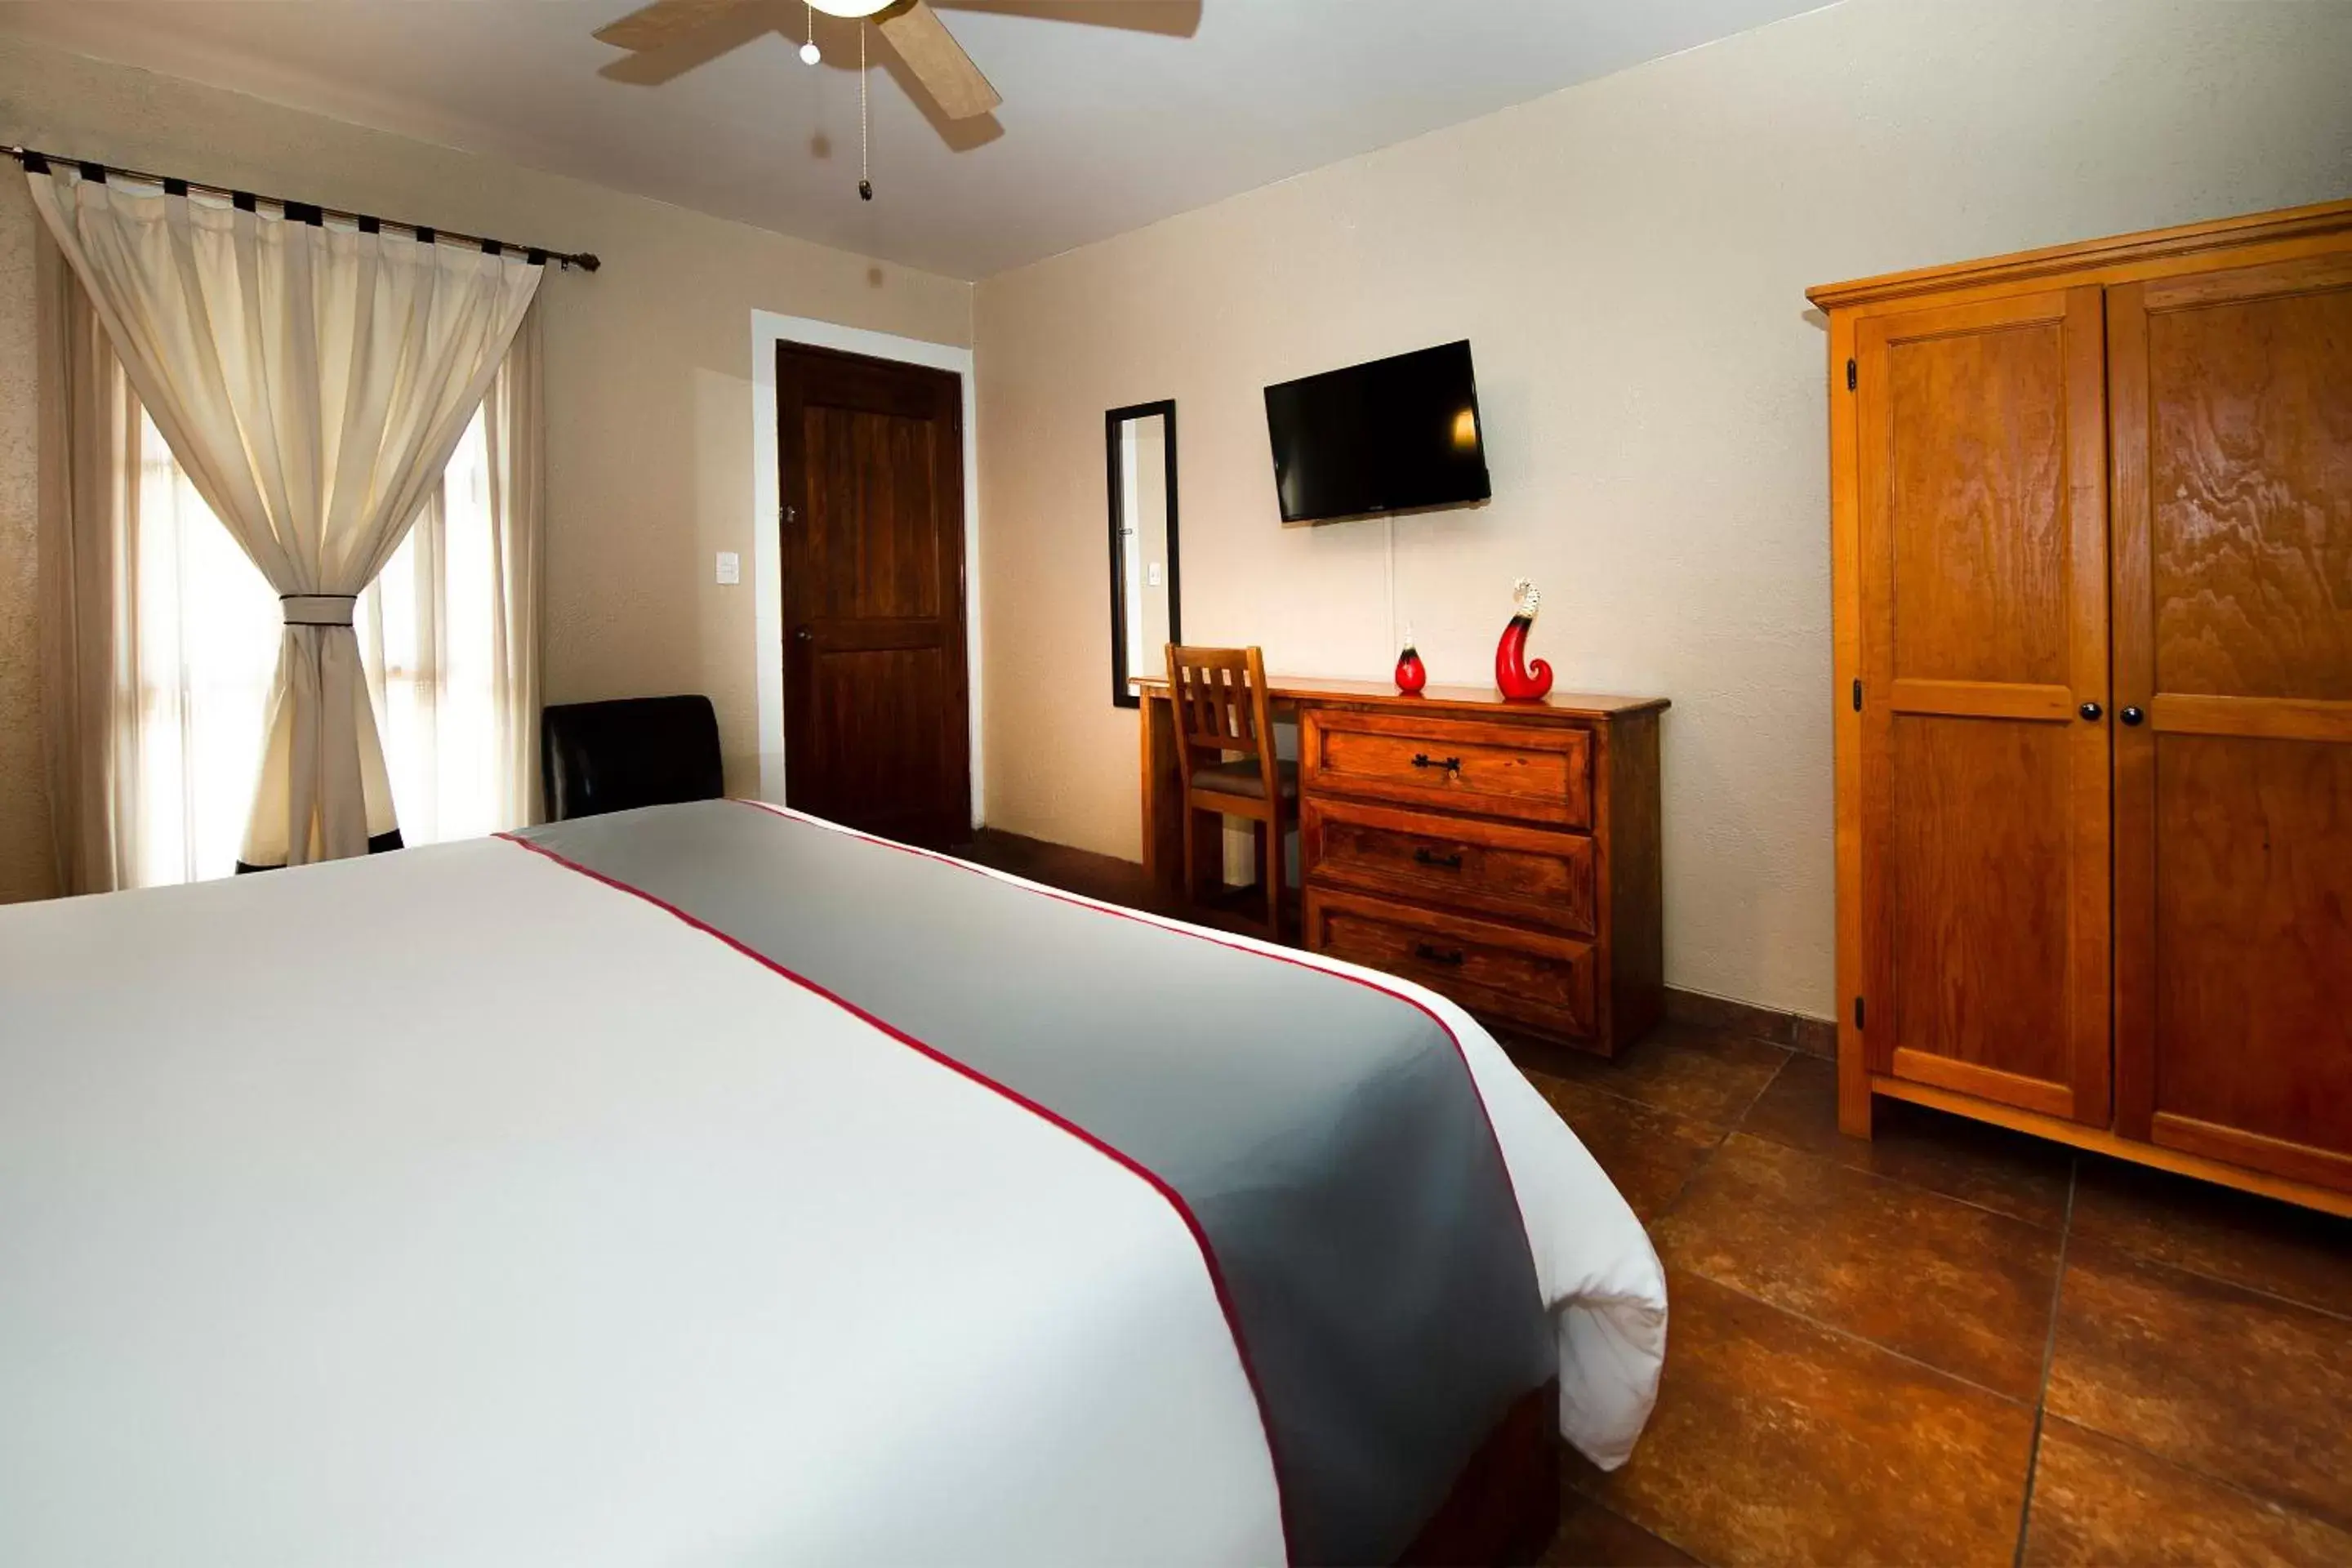 Bedroom, Room Photo in La Casona Tequisquiapan Hotel & Spa